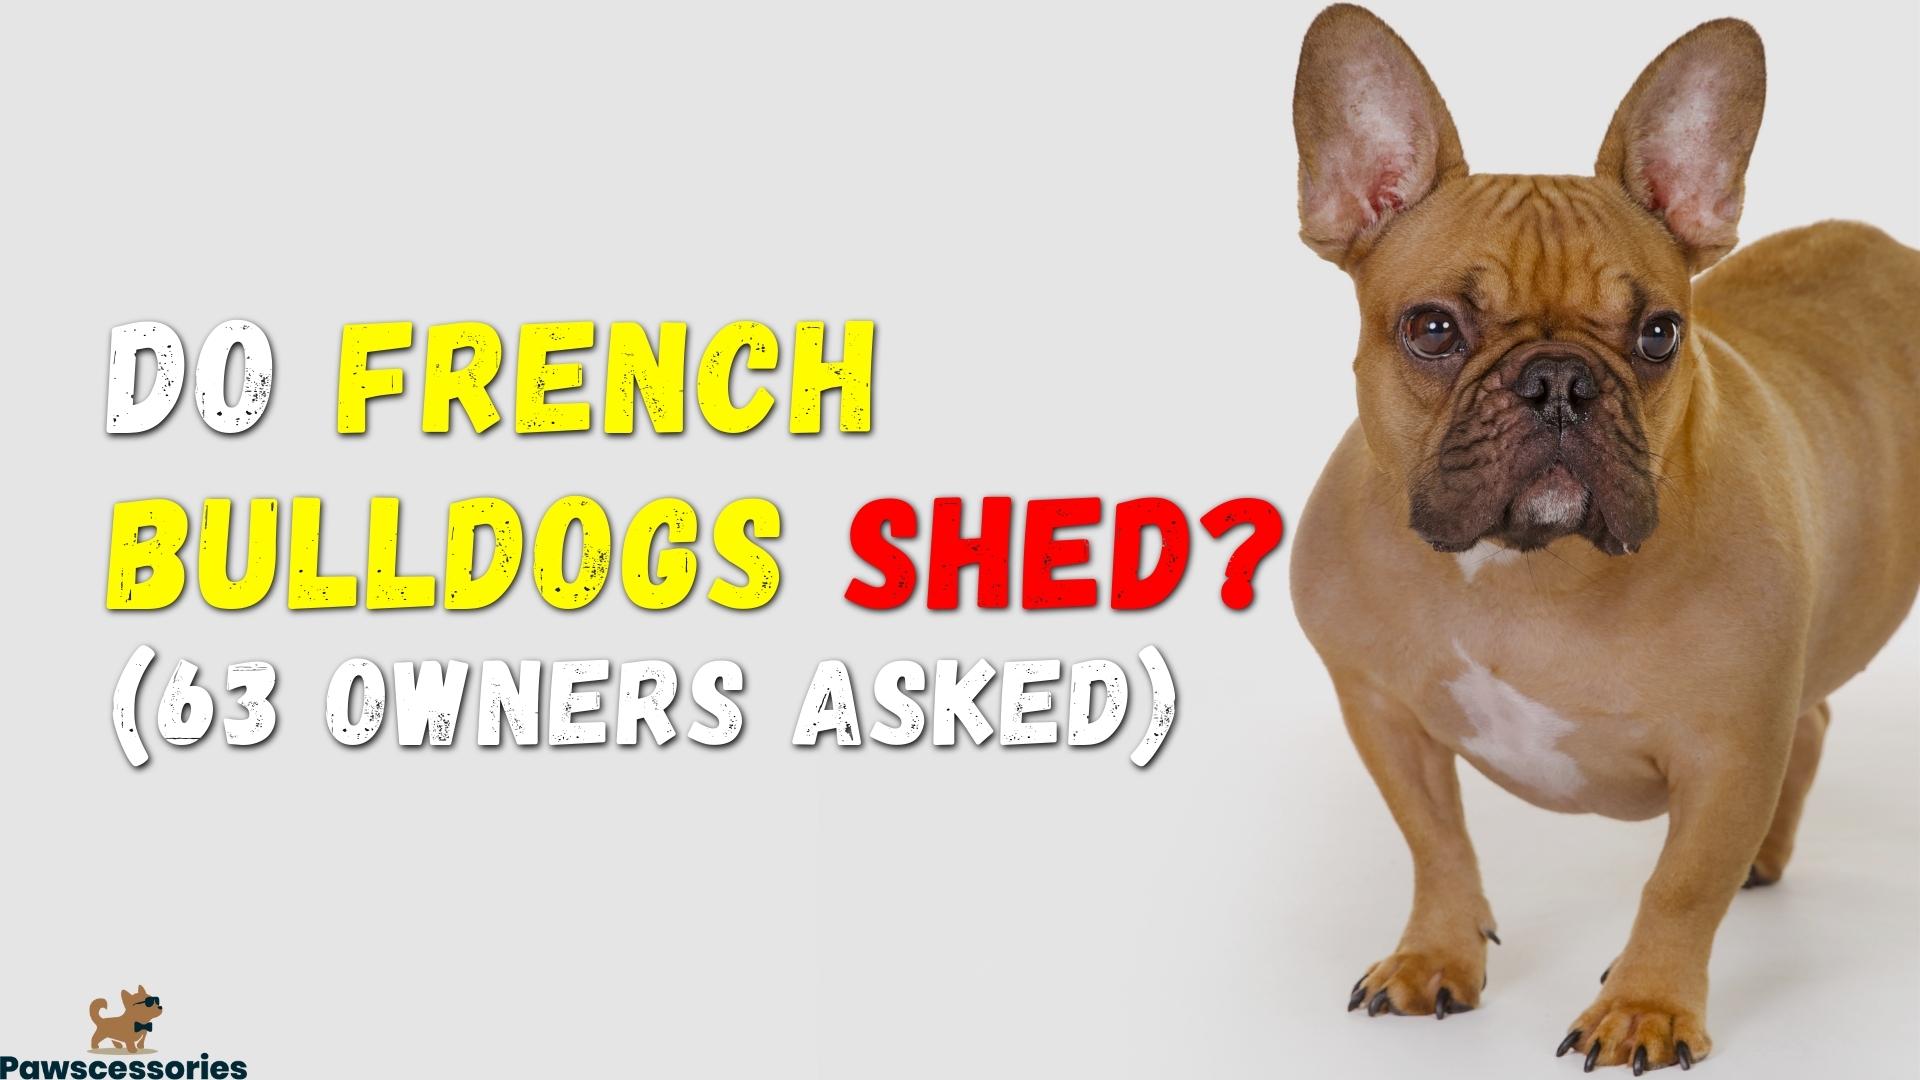 French bulldog shedding